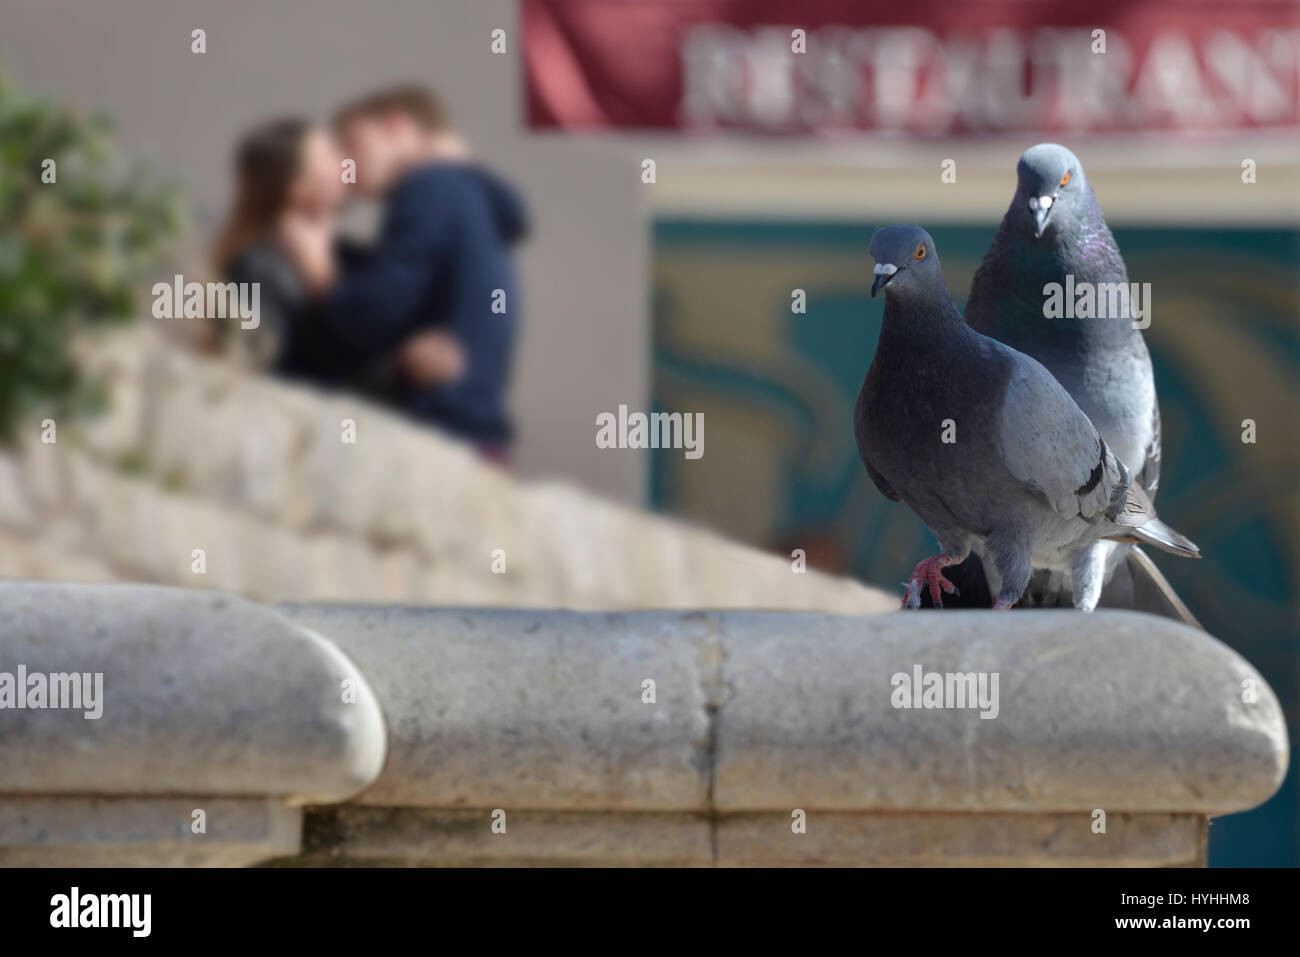 Gegenüberstellung von küssende Paar im Hintergrund, durch die Paarung Tauben im Vordergrund. Stockfoto